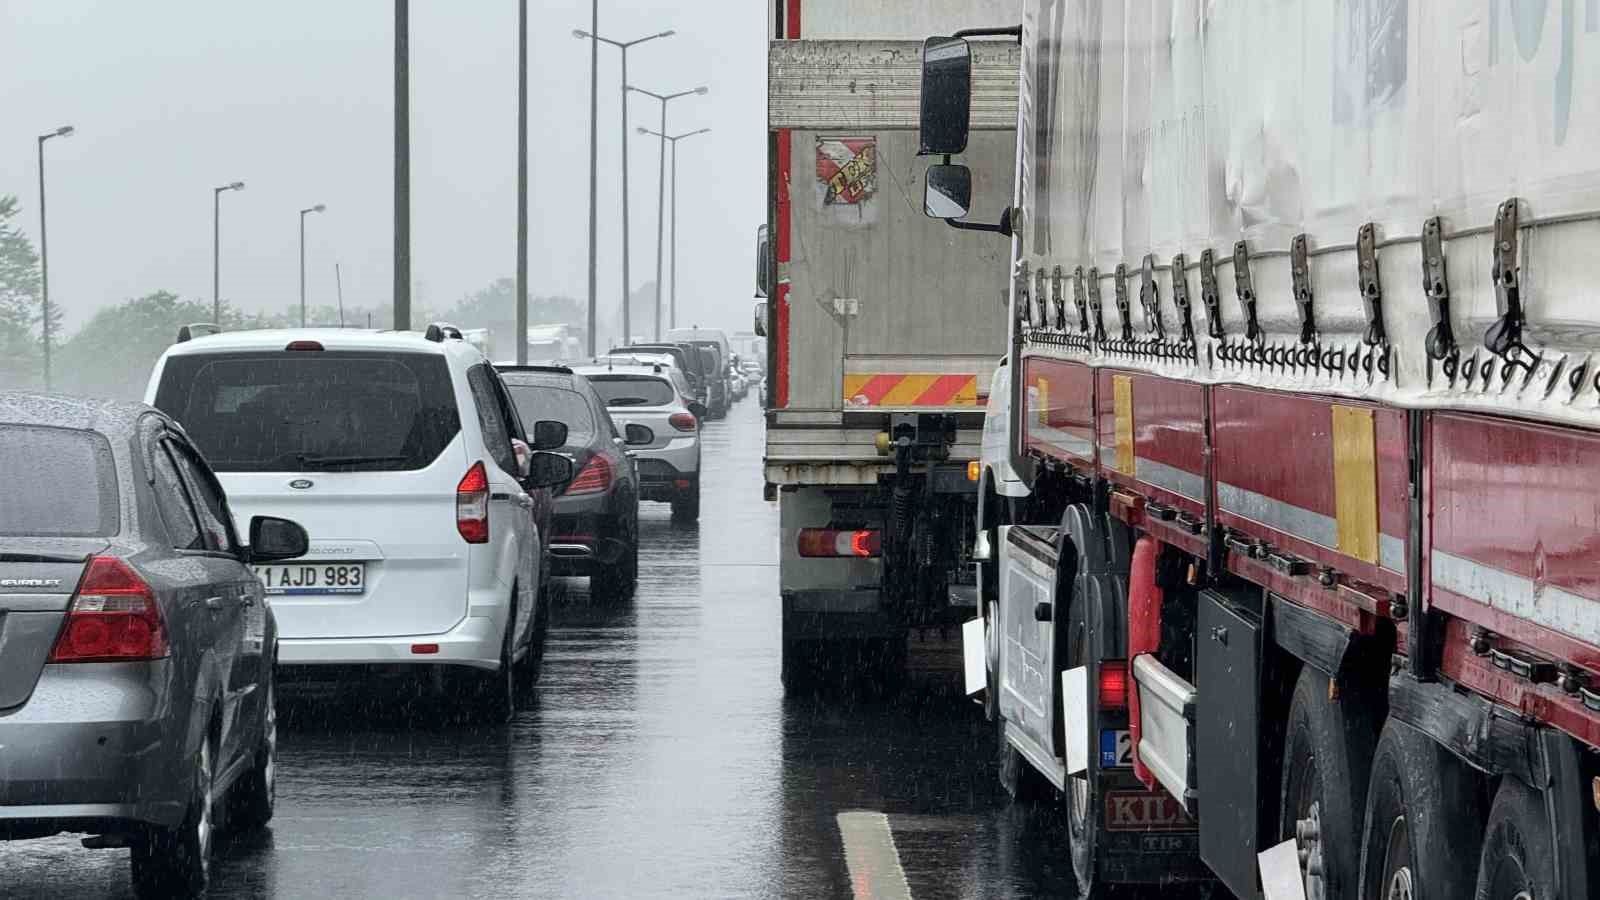 Yağış kazayı beraberinde getirdi, İstanbul istikameti 1 buçuk saat kapalı kaldı
